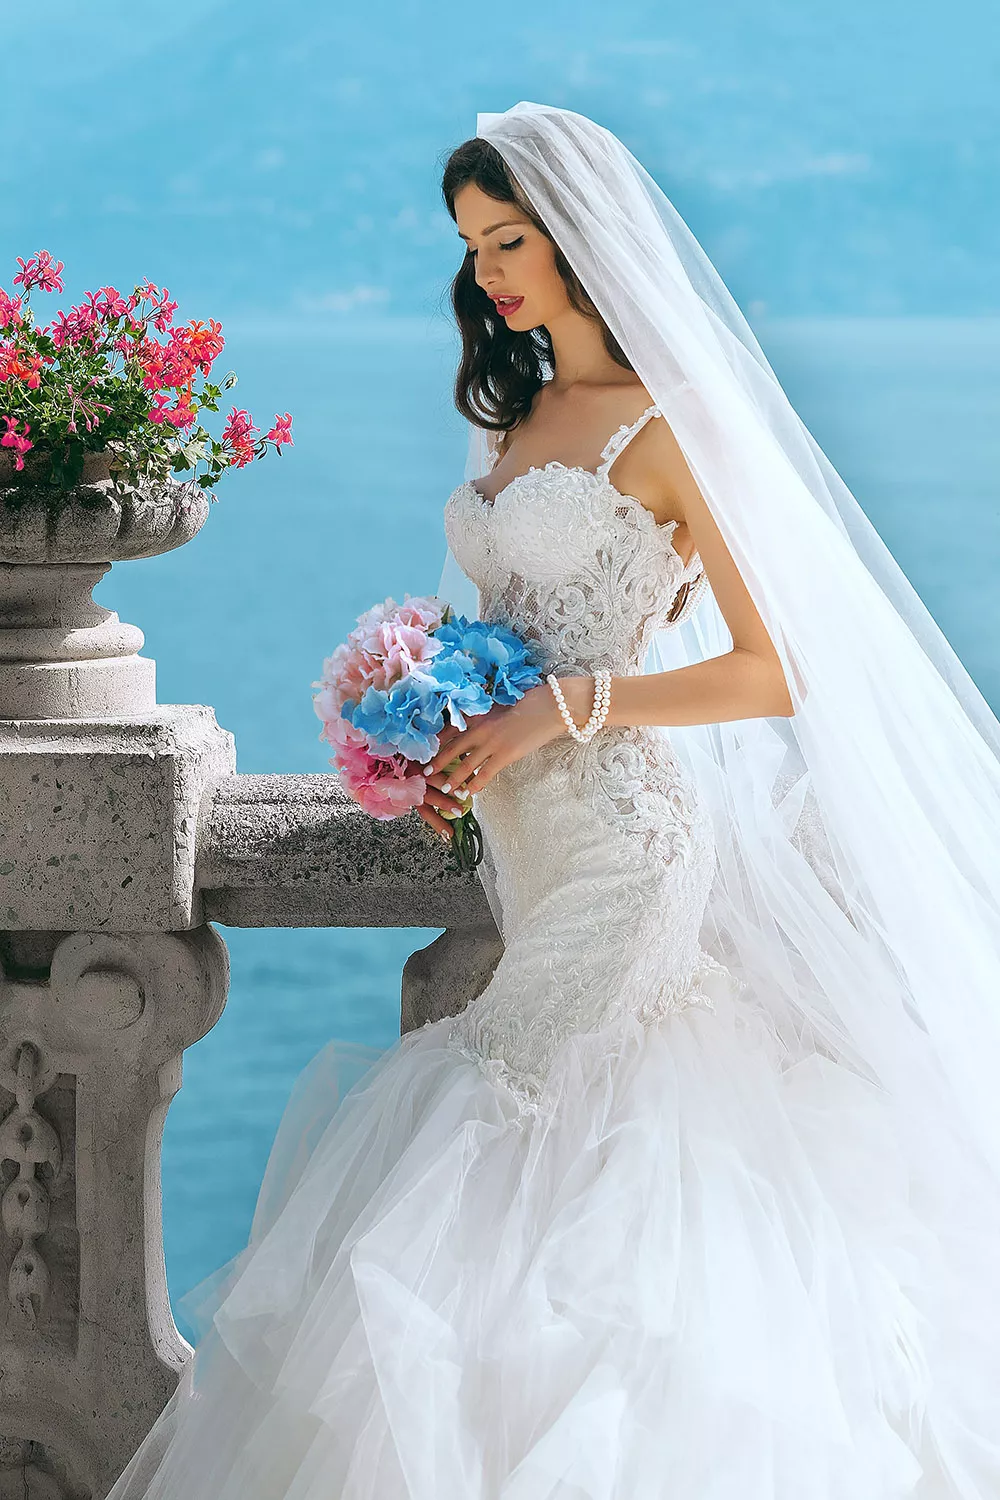 有馬甲設計的婚紗讓每位新娘都能獲得讓人欽羨的輪廓。